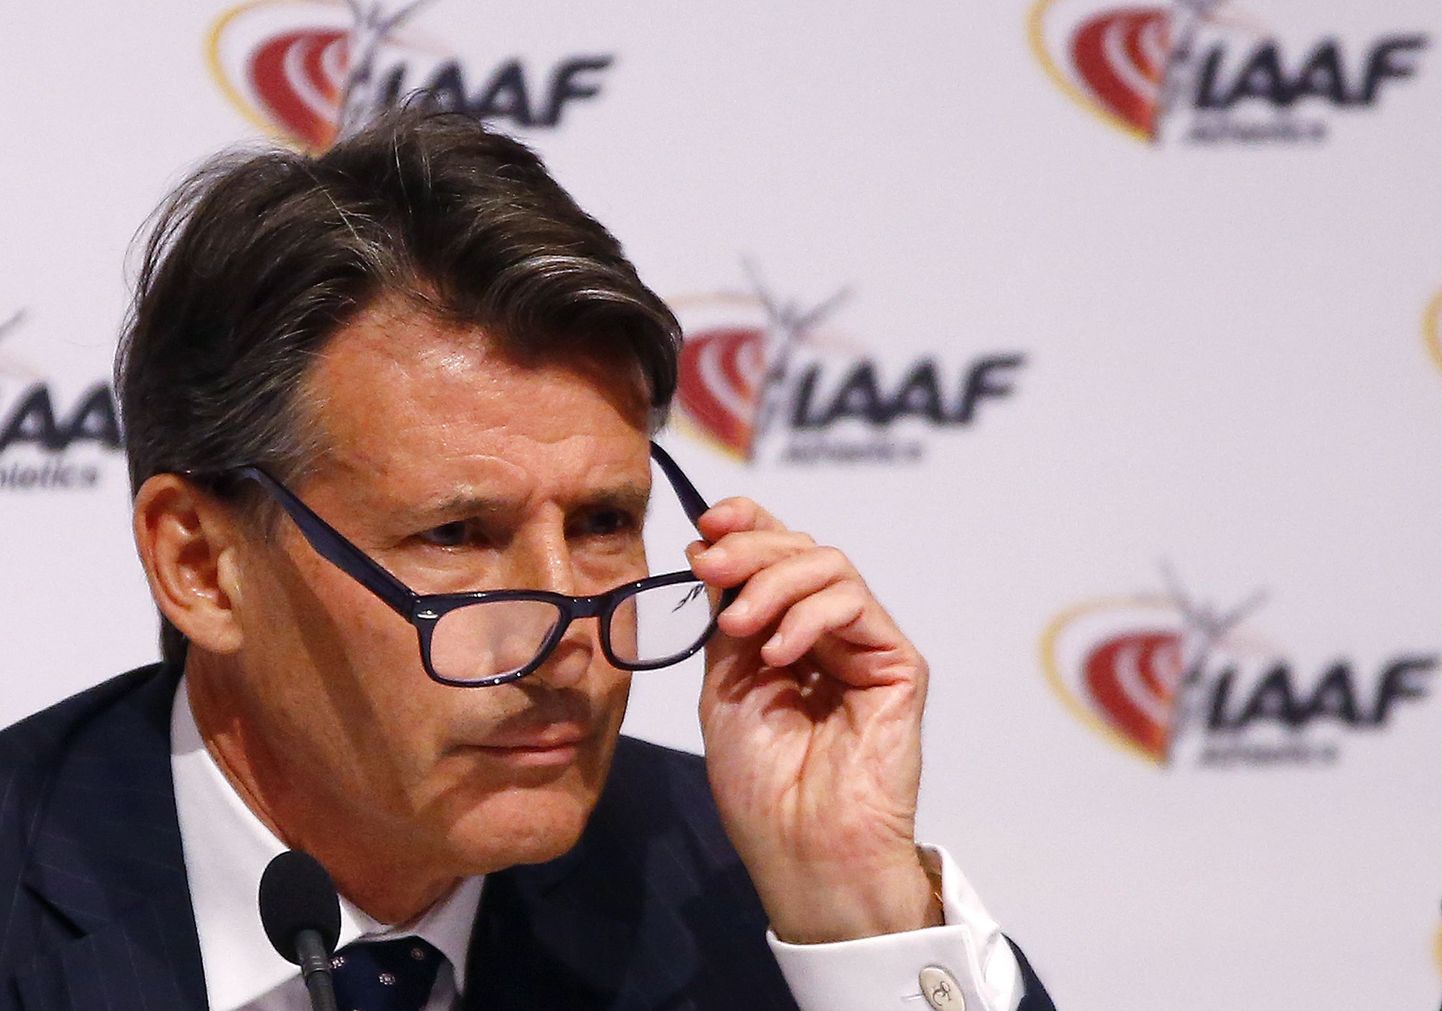 IAAFi president Sebastian Coe ja tema kolleegid hoiavad patustajatel teravalt silma peal.